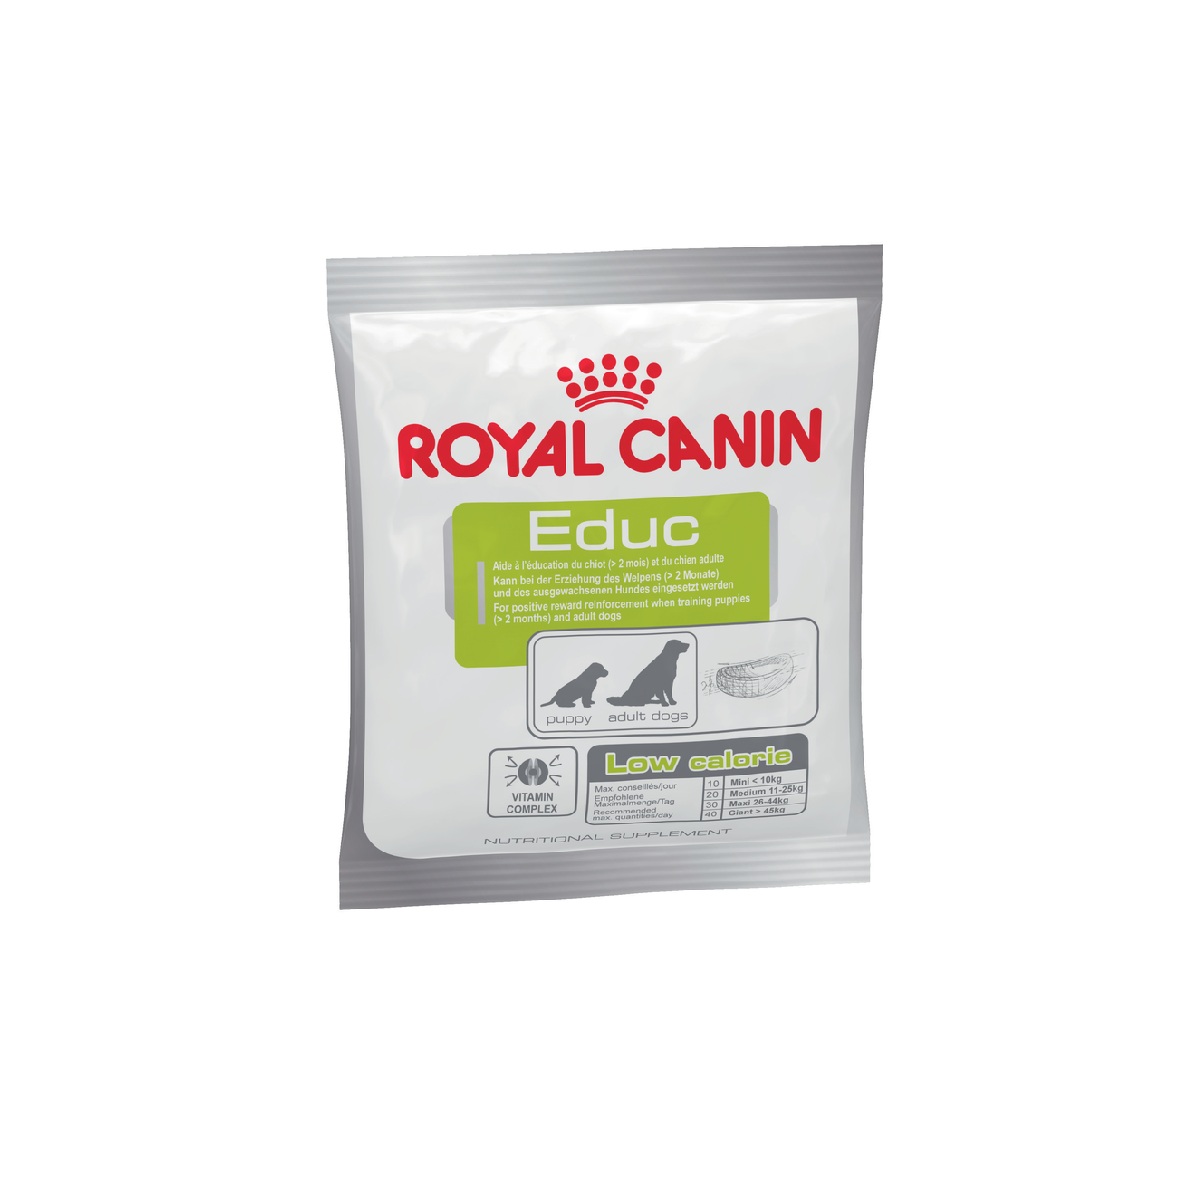 Royal Canin Educ - prigrizki za odrasle...